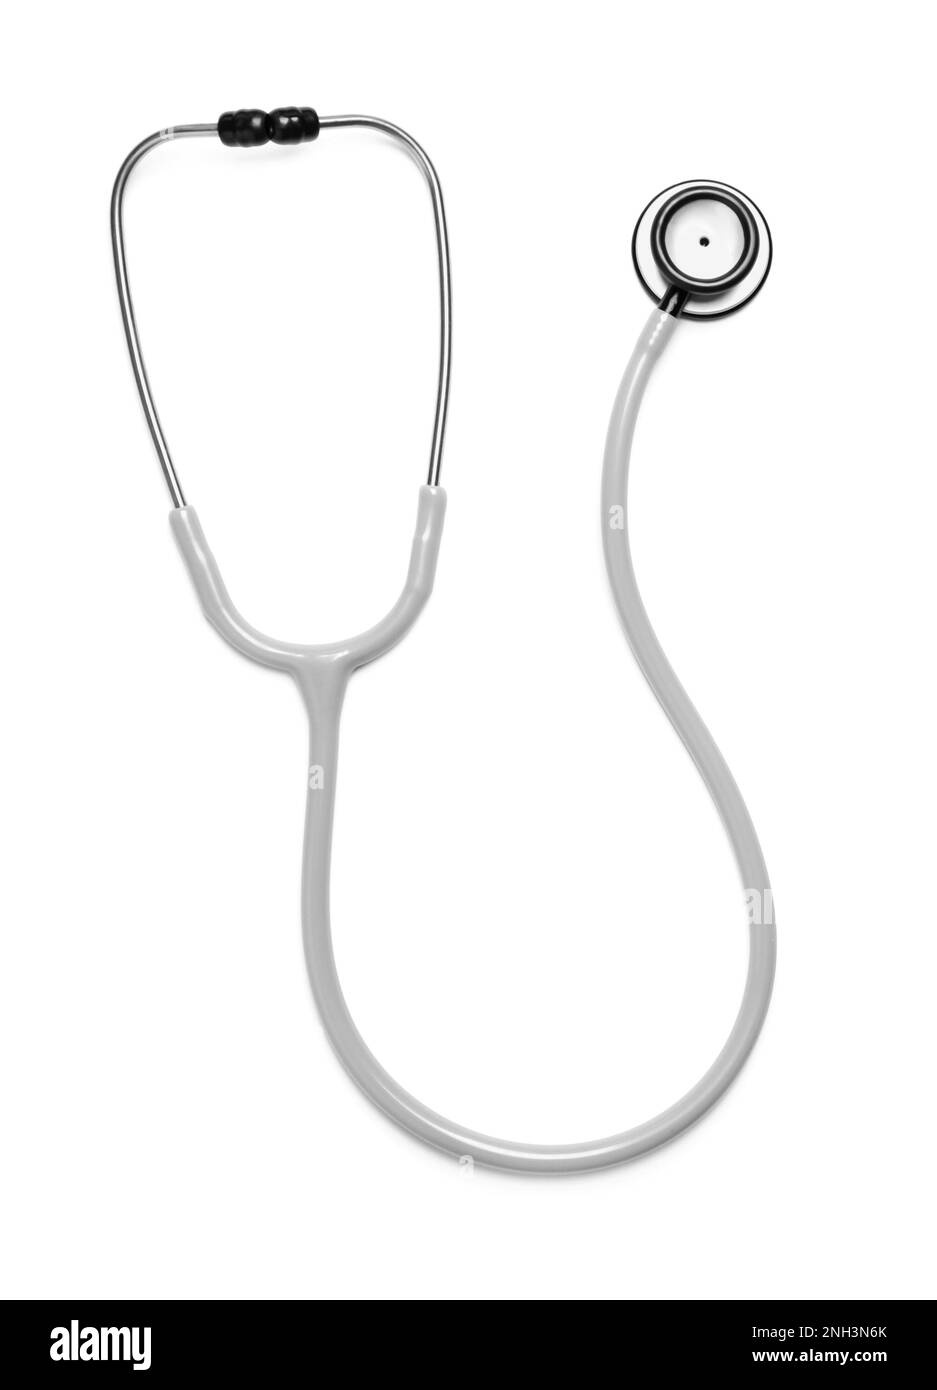 Modernes Stethoskop auf weißem Hintergrund, Draufsicht Stockfoto